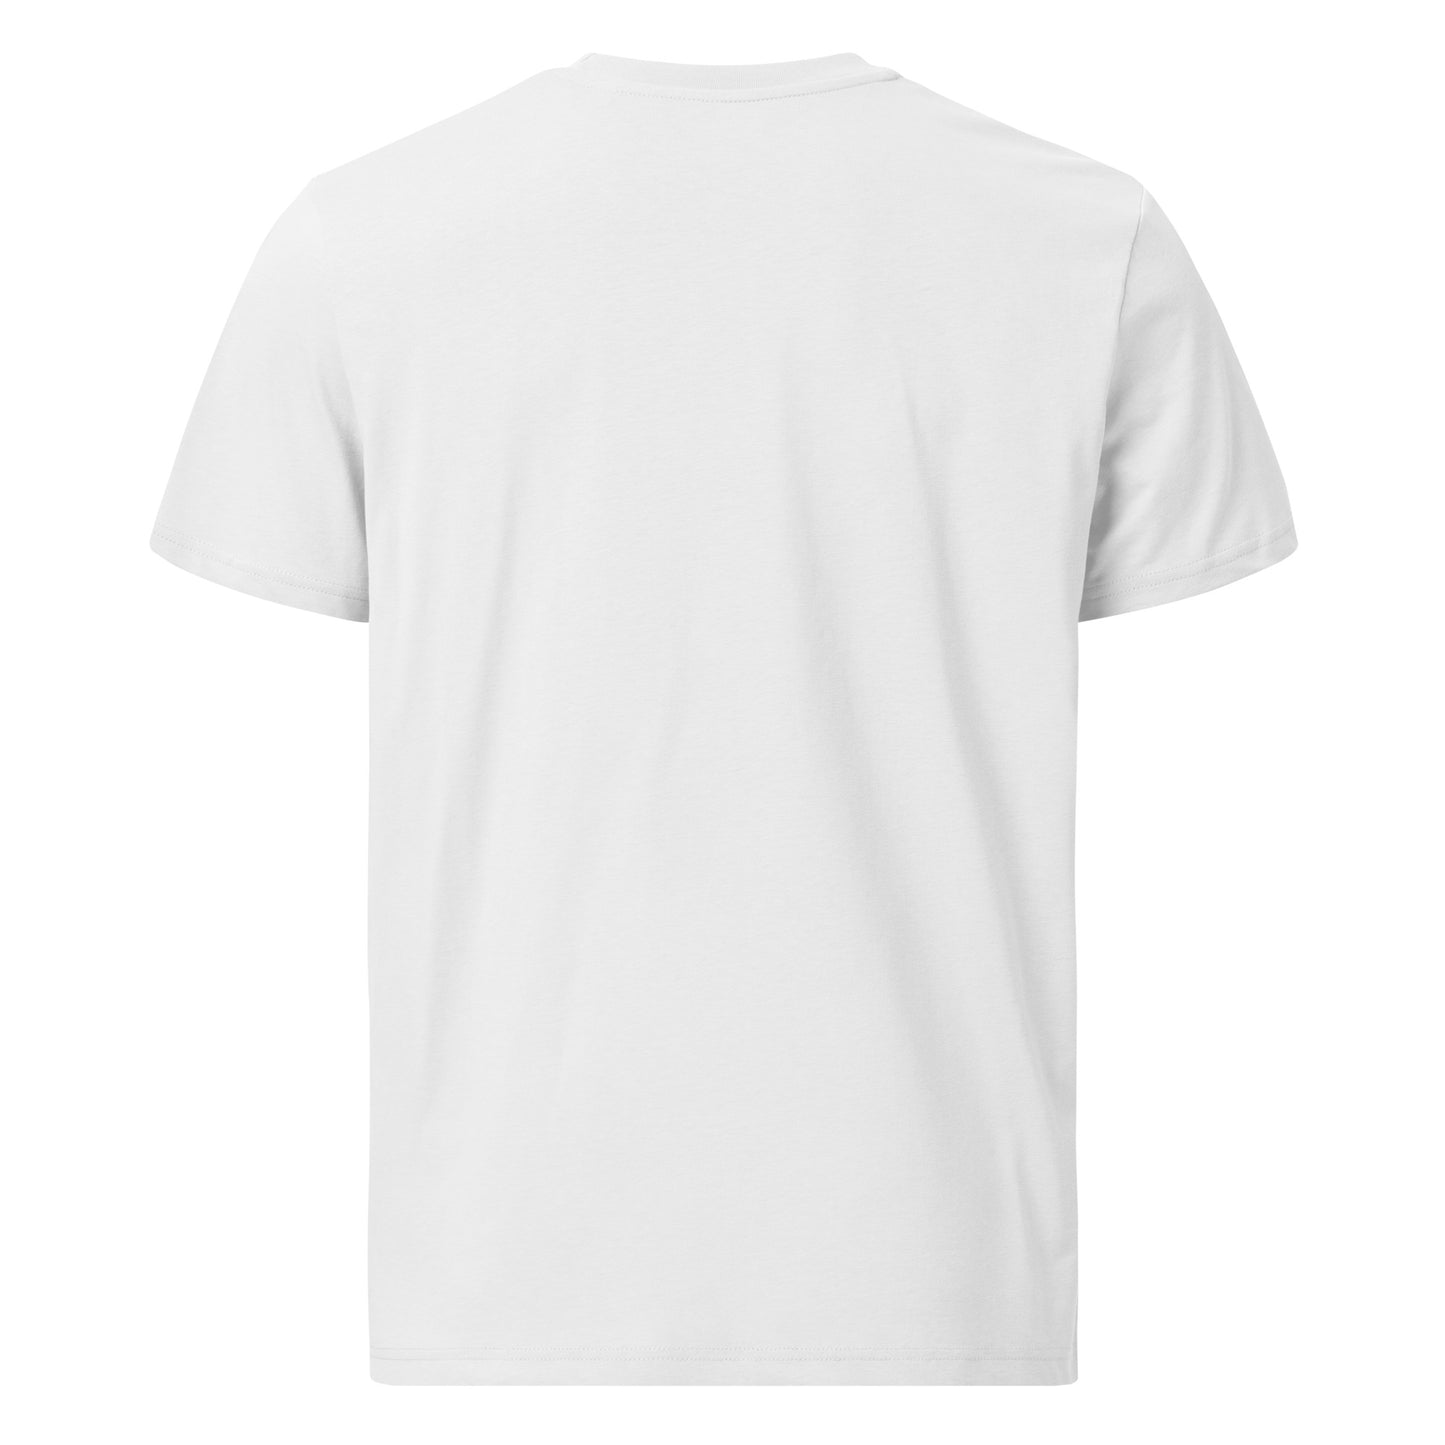 T-shirt unisexe Hones Serenity en coton biologique